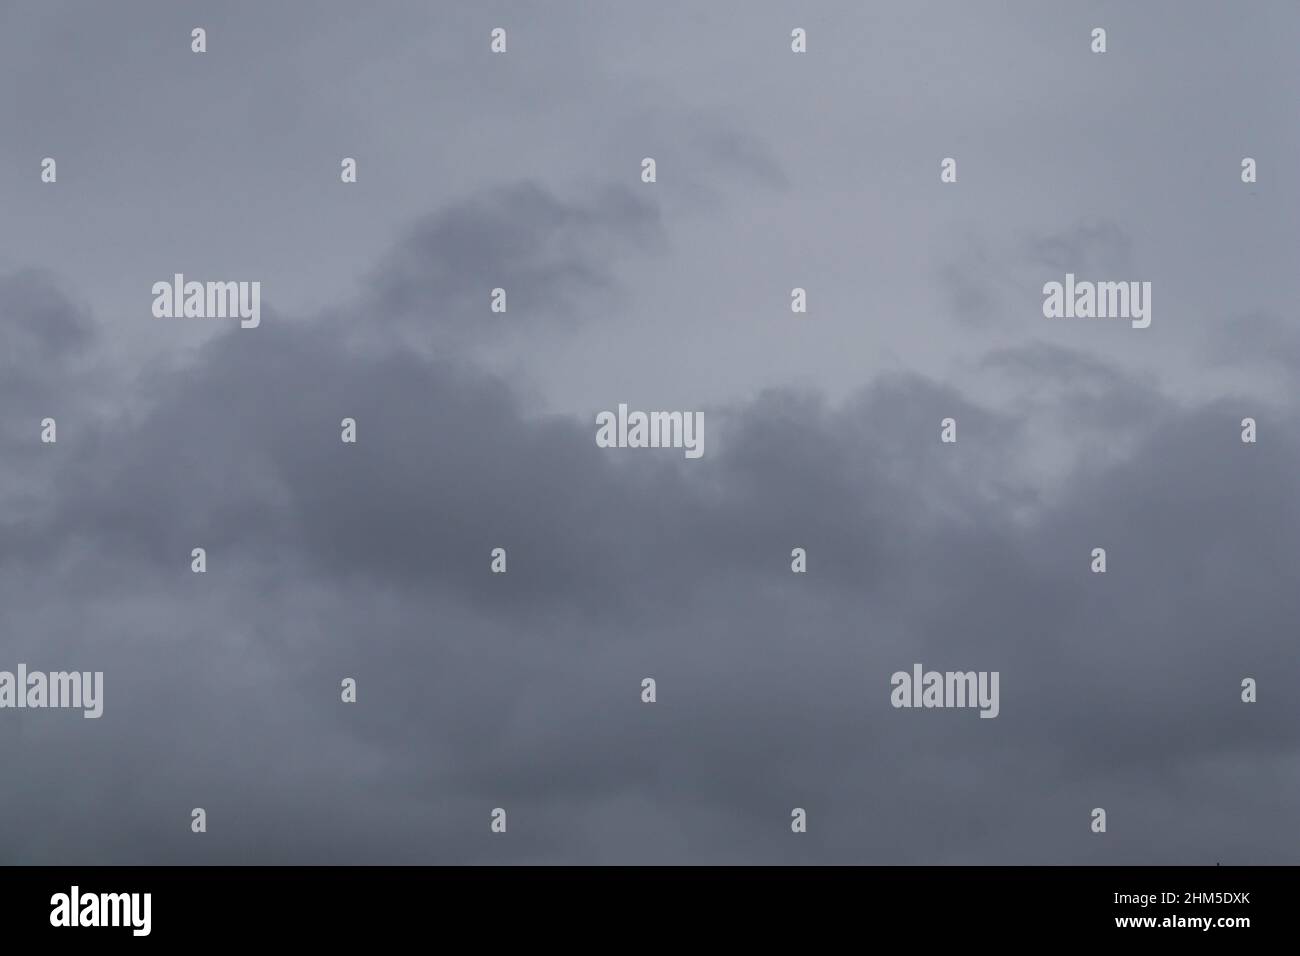 Bedeckt, Wolken am Himmel - grau bewölkt Himmel - Hintergrundstruktur Stockfoto